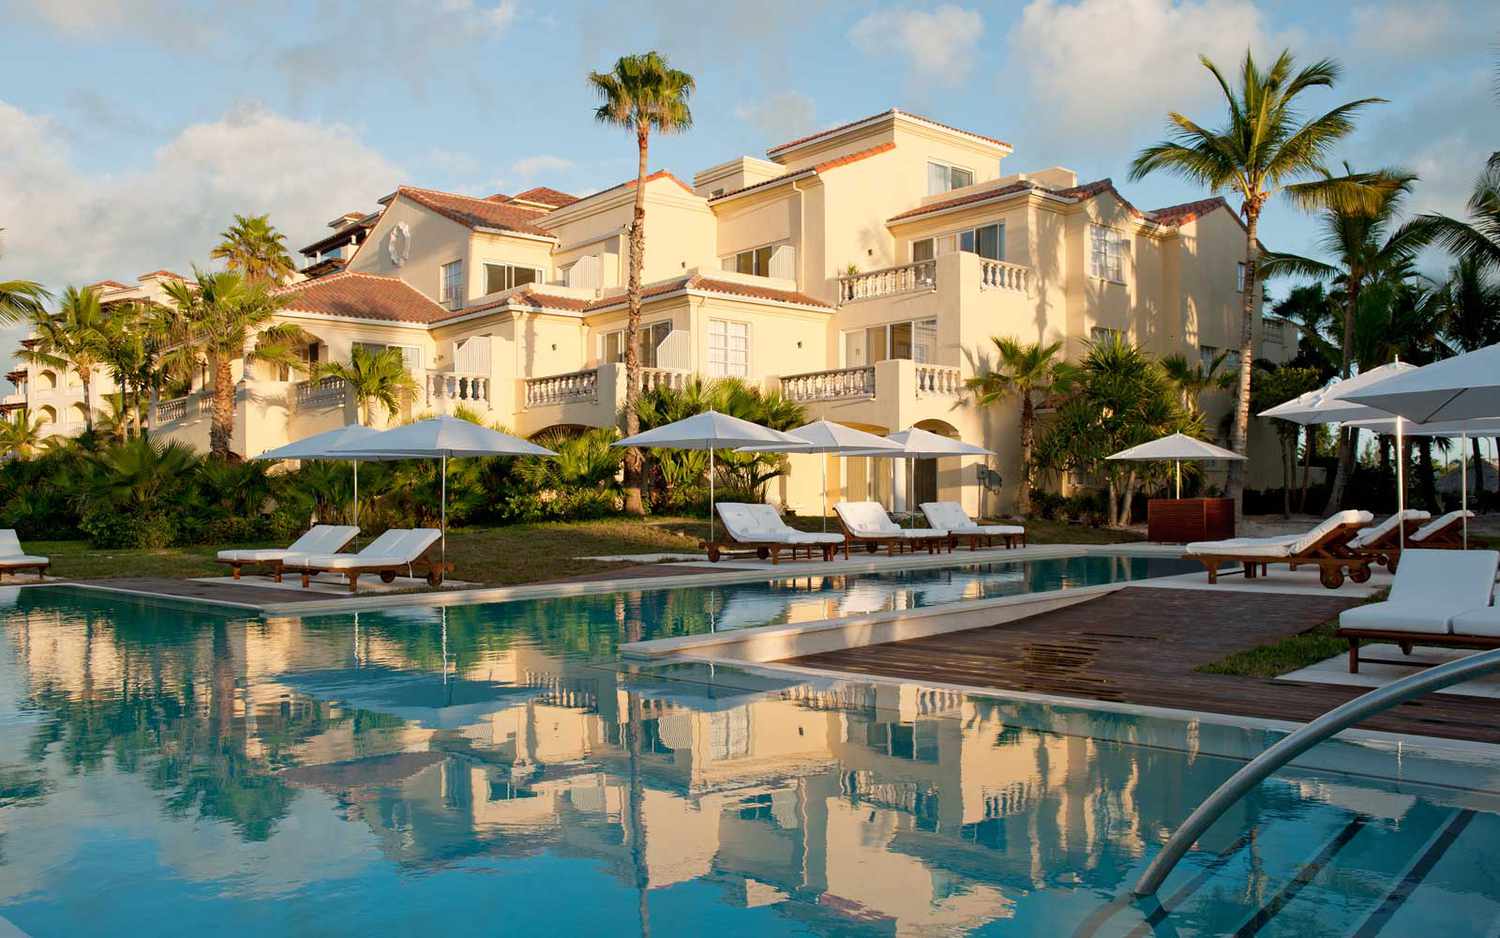 Vue depuis la piscine de l'hôtel principal du complexe de luxe Grace Bay Club dans les îles Turques et Caïques